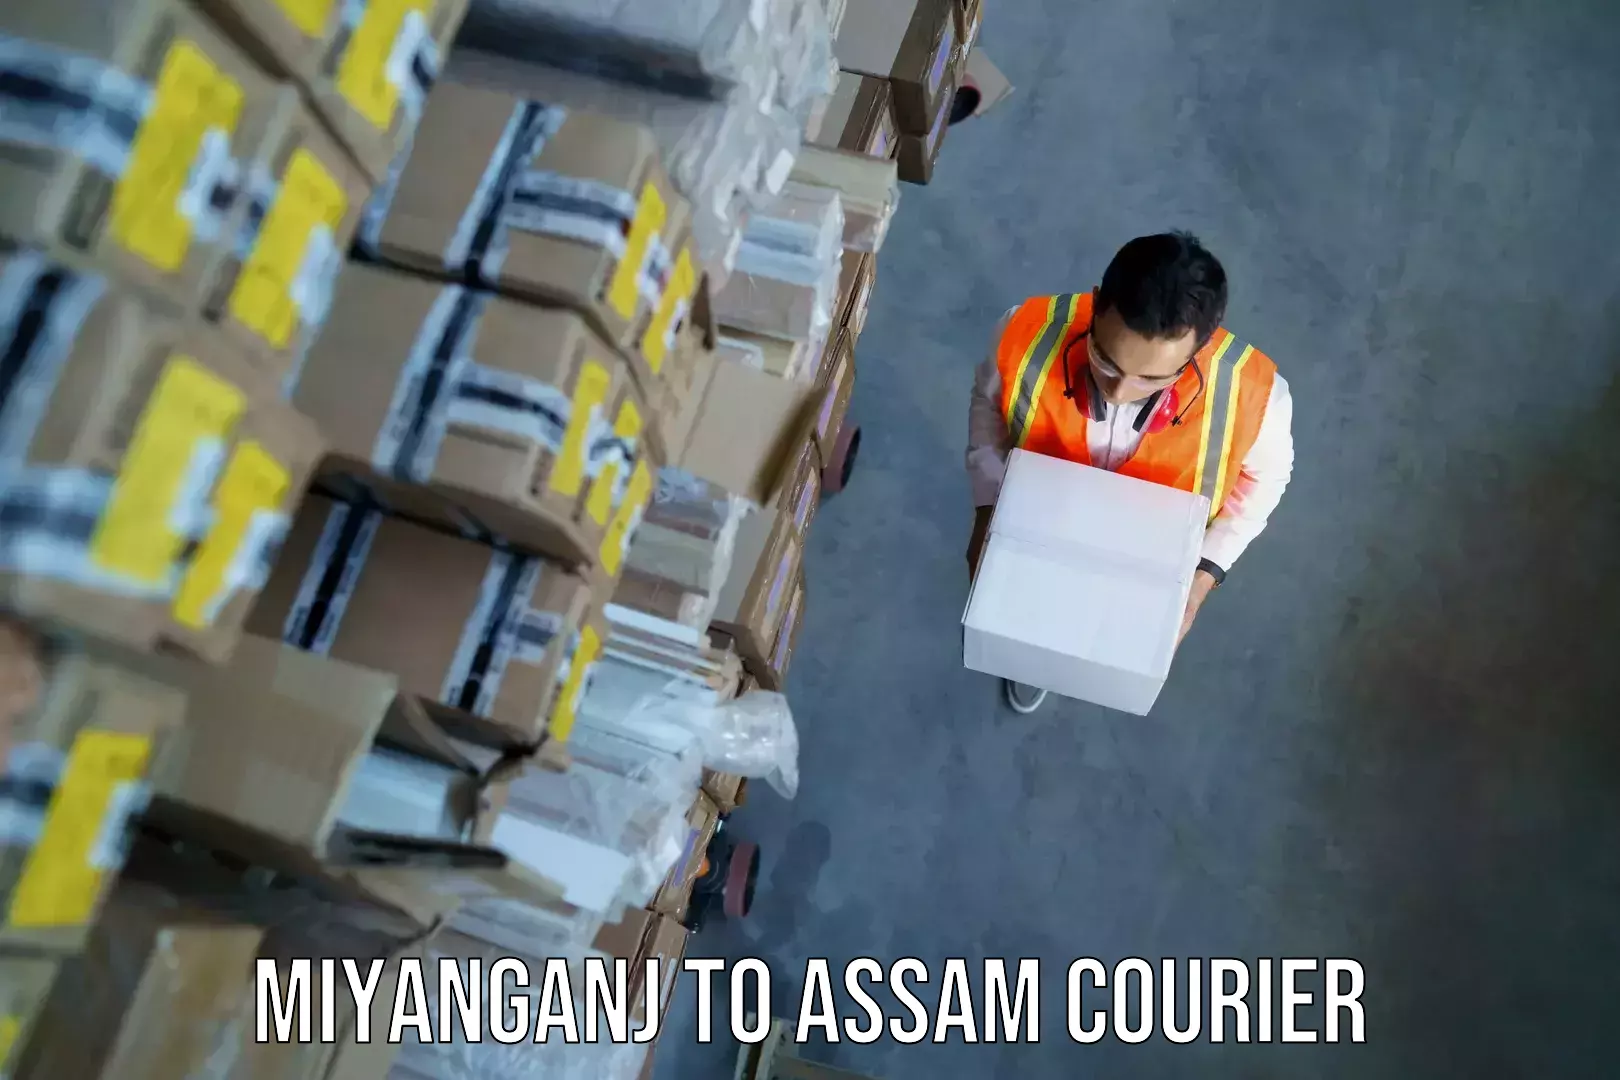 Baggage transport estimate Miyanganj to Assam